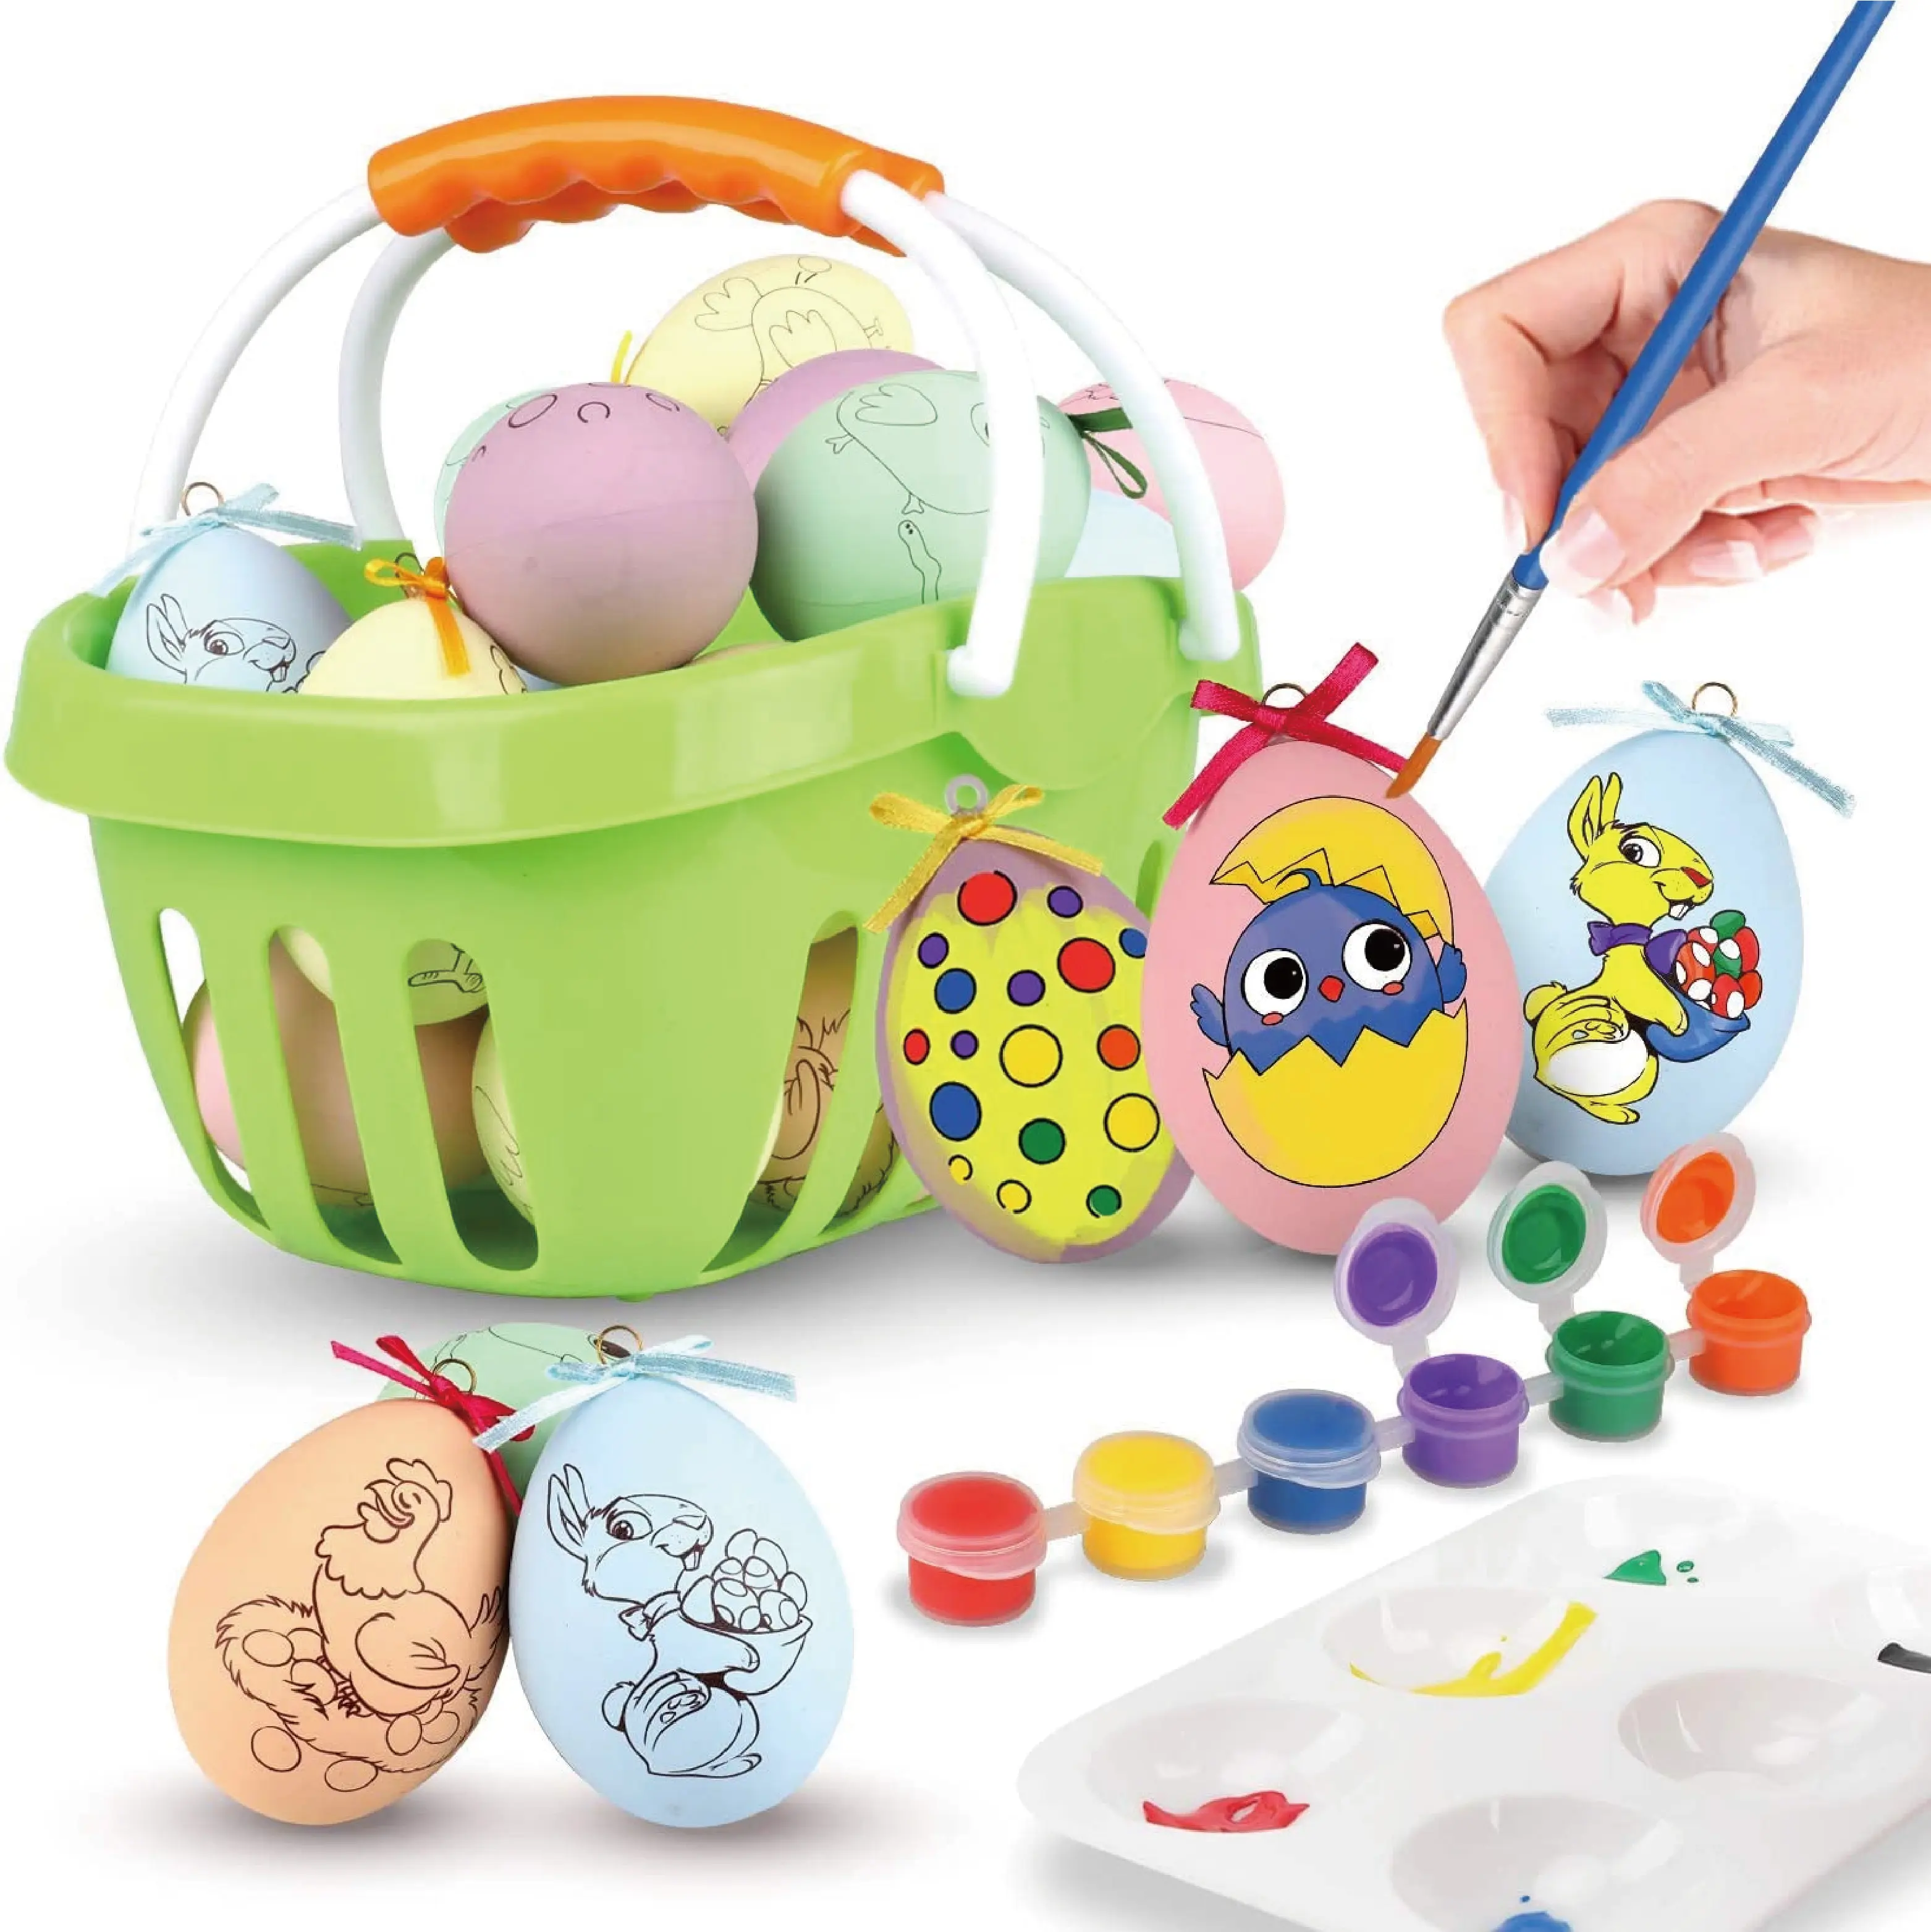 새로운 디자인 DIY 낙서 장난감 부활절 달걀 데코레이터 키트 어린이를위한 플라스틱 토끼 그림 계란